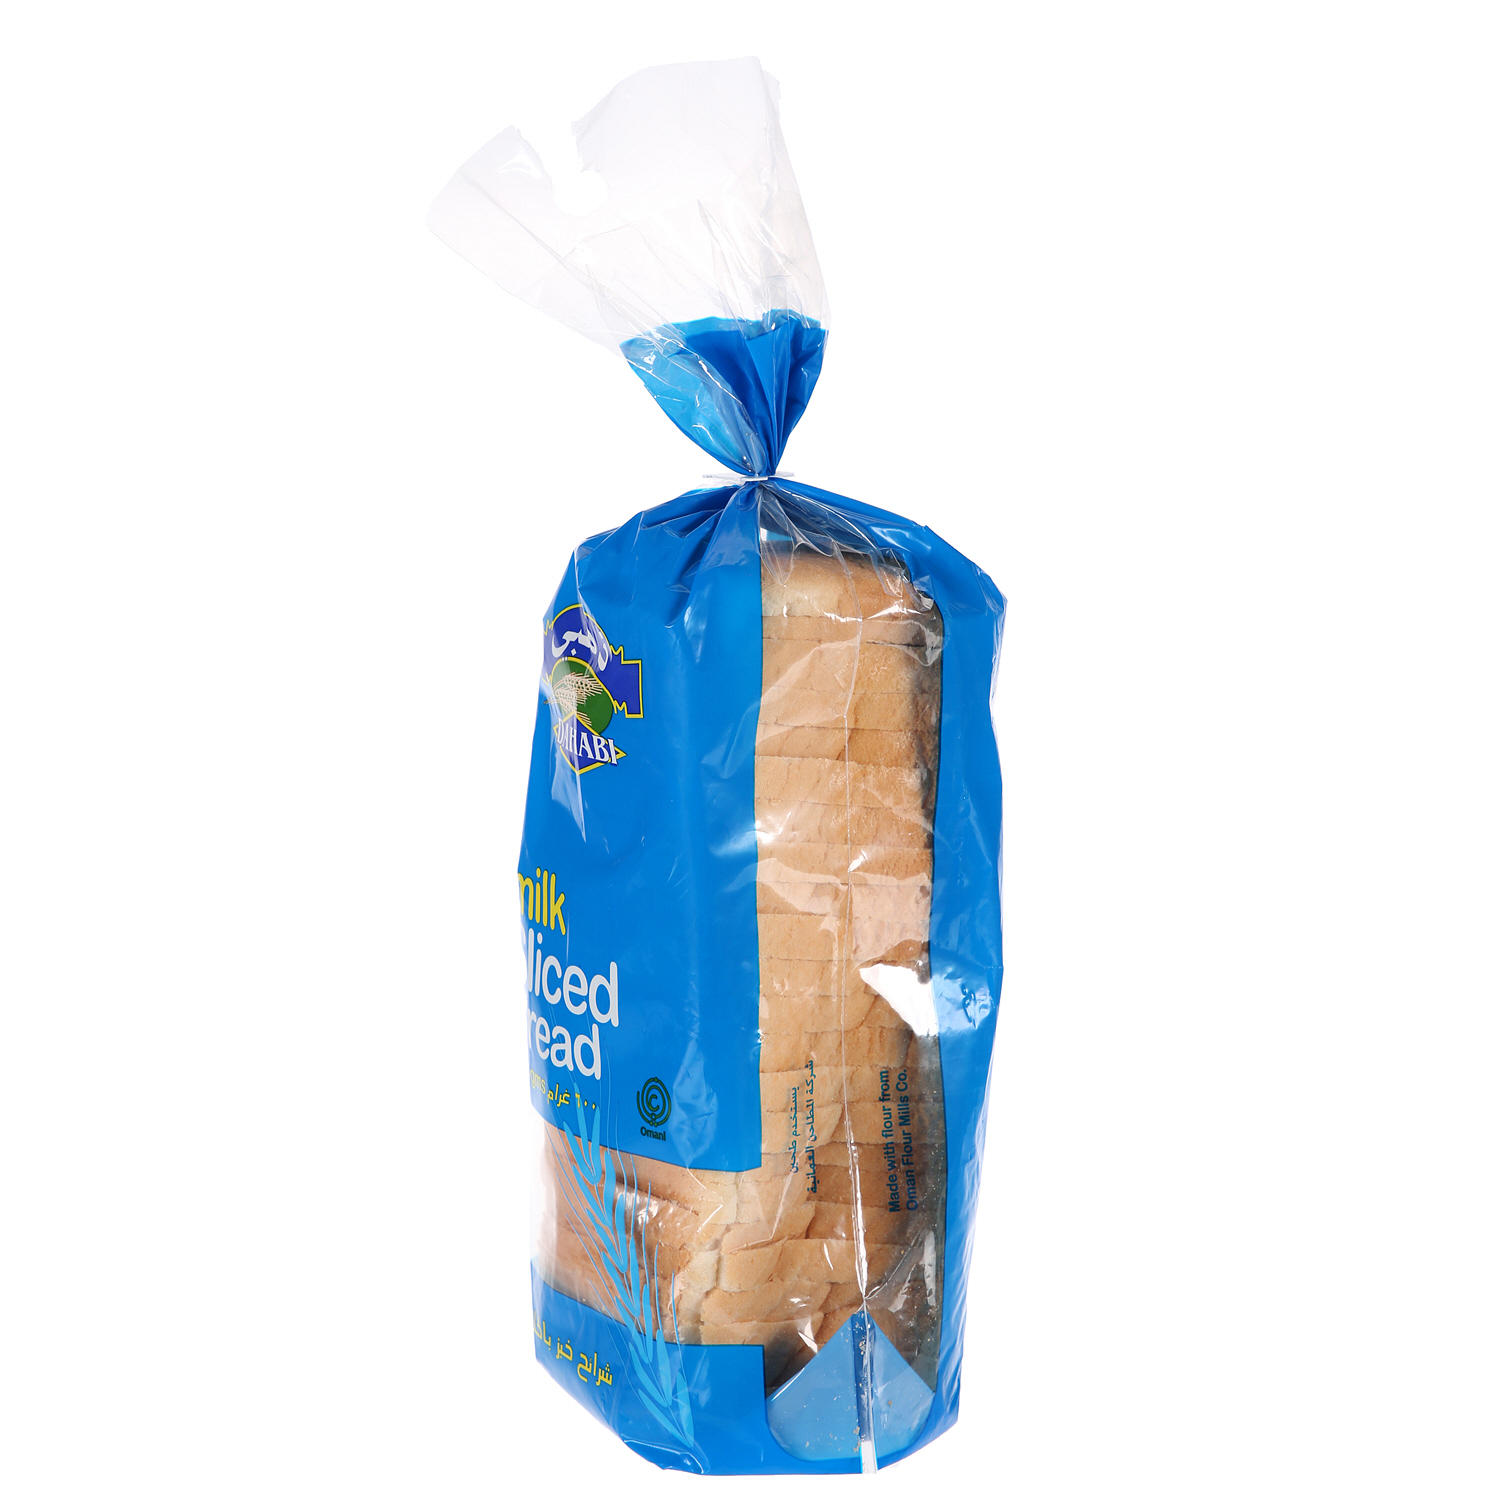 Dahabi Slicesd Bread Milk 600 g